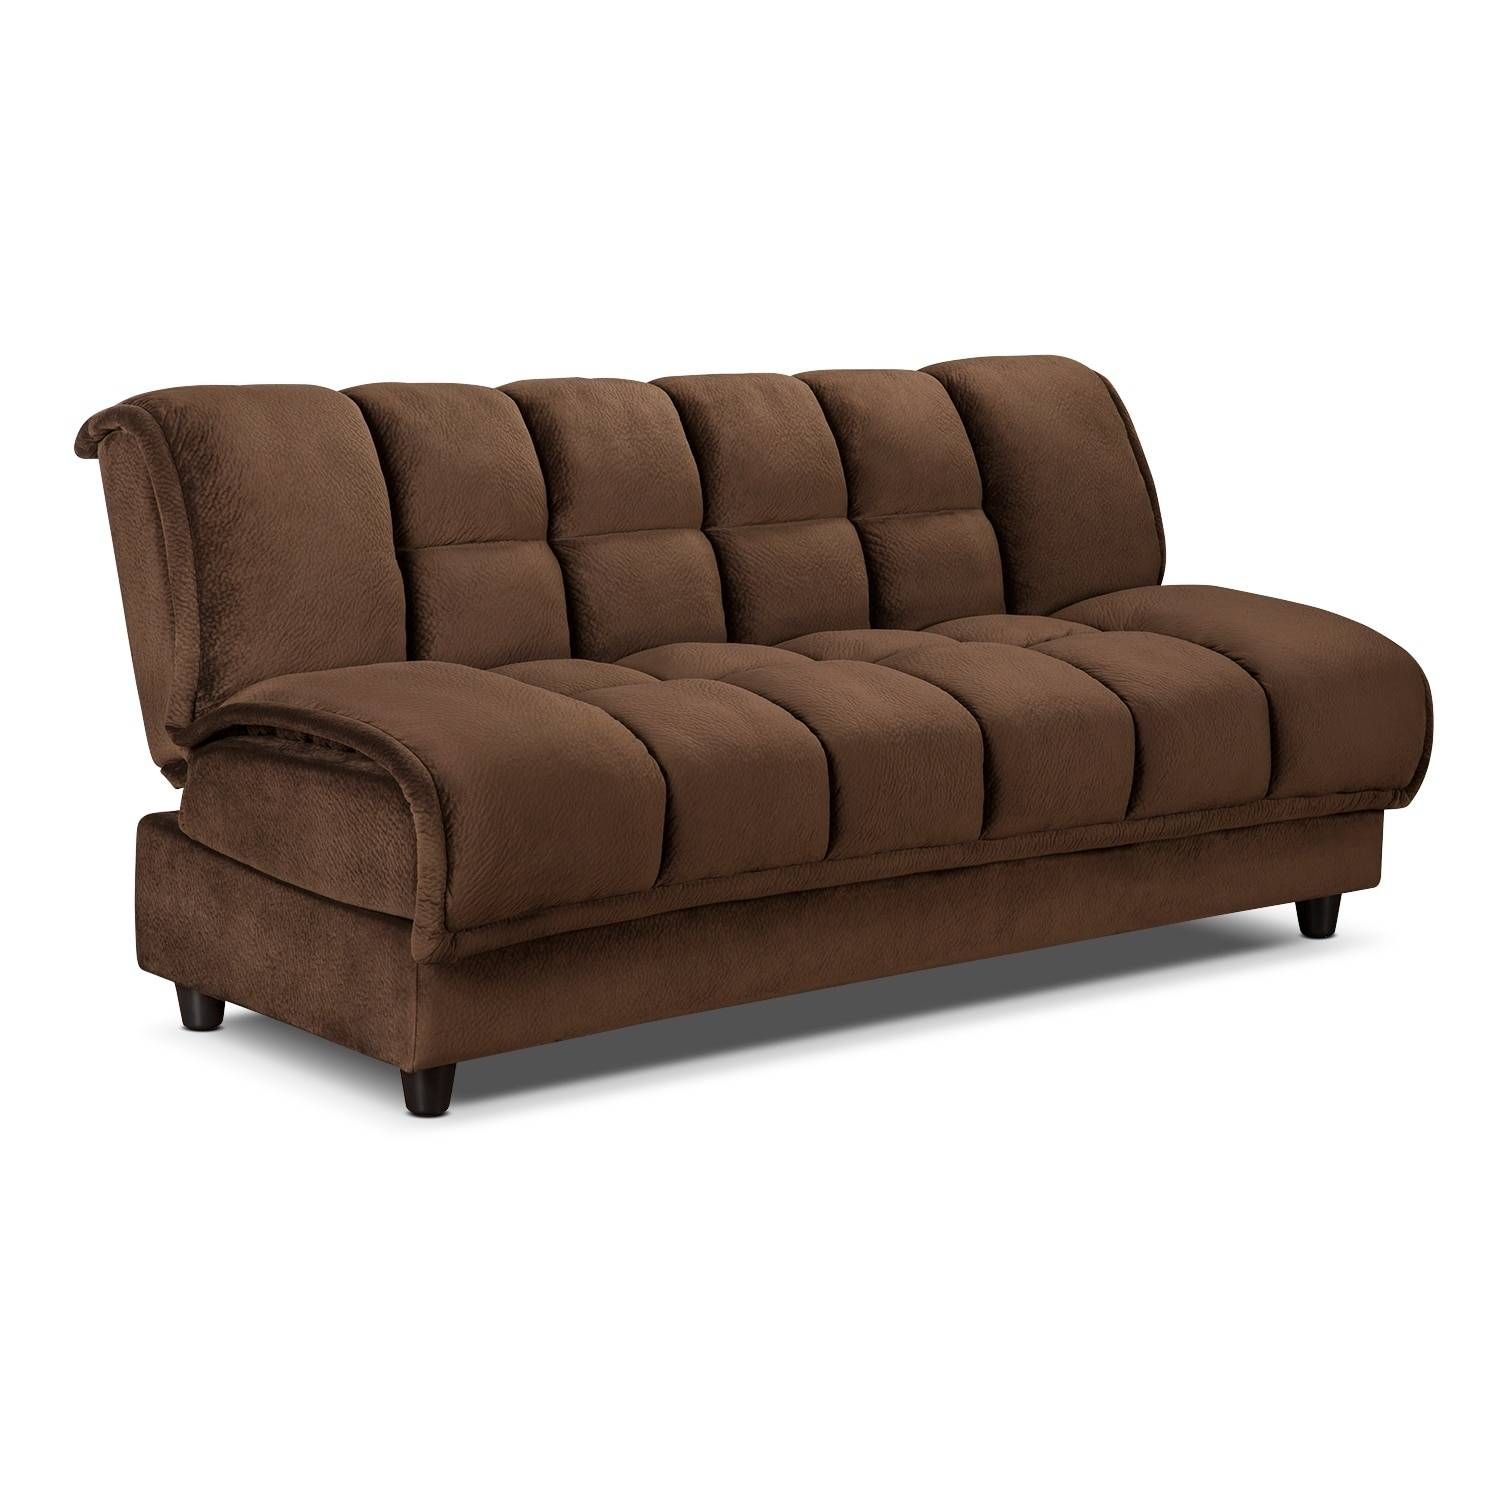 Sofas Center : Futon Sleeper Sofa New Mod Mid Century Gray Regarding Mod Sofas (Photo 15 of 30)